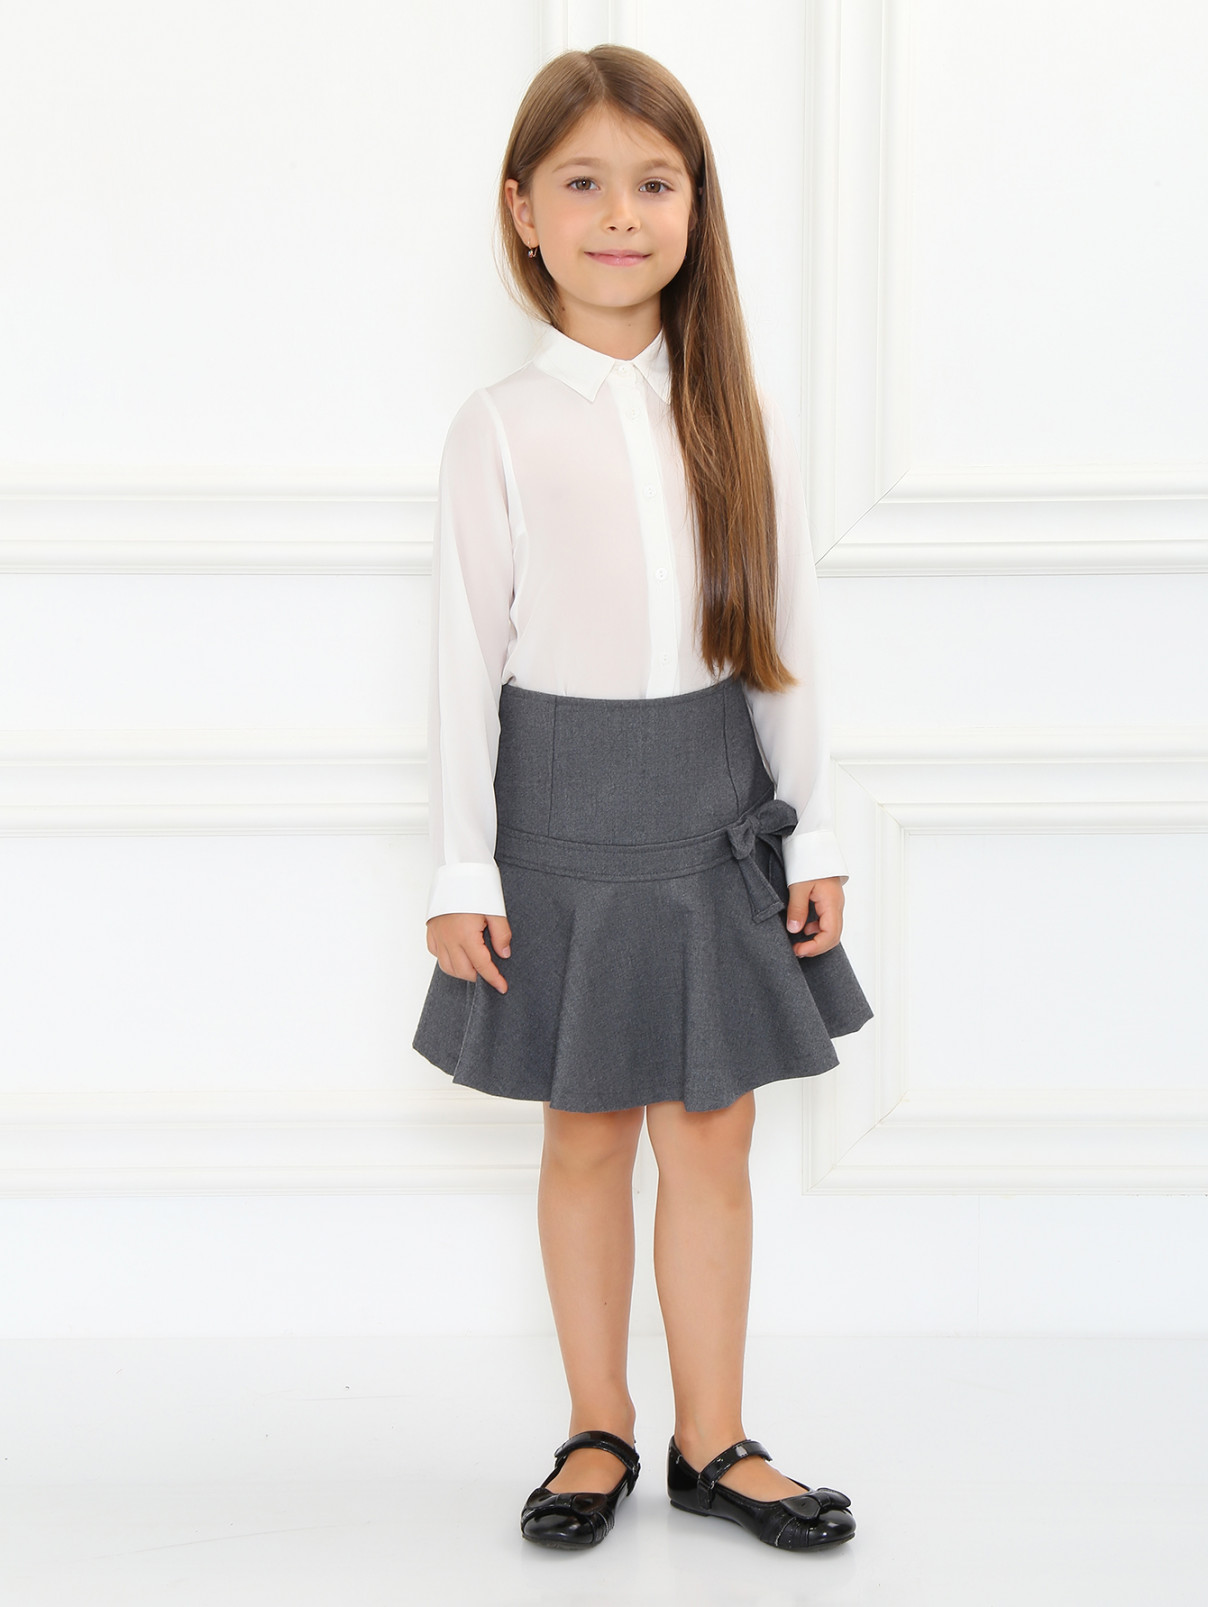 Юбка-мини с декором "бант" Aletta Couture  –  Модель Общий вид  – Цвет:  Серый